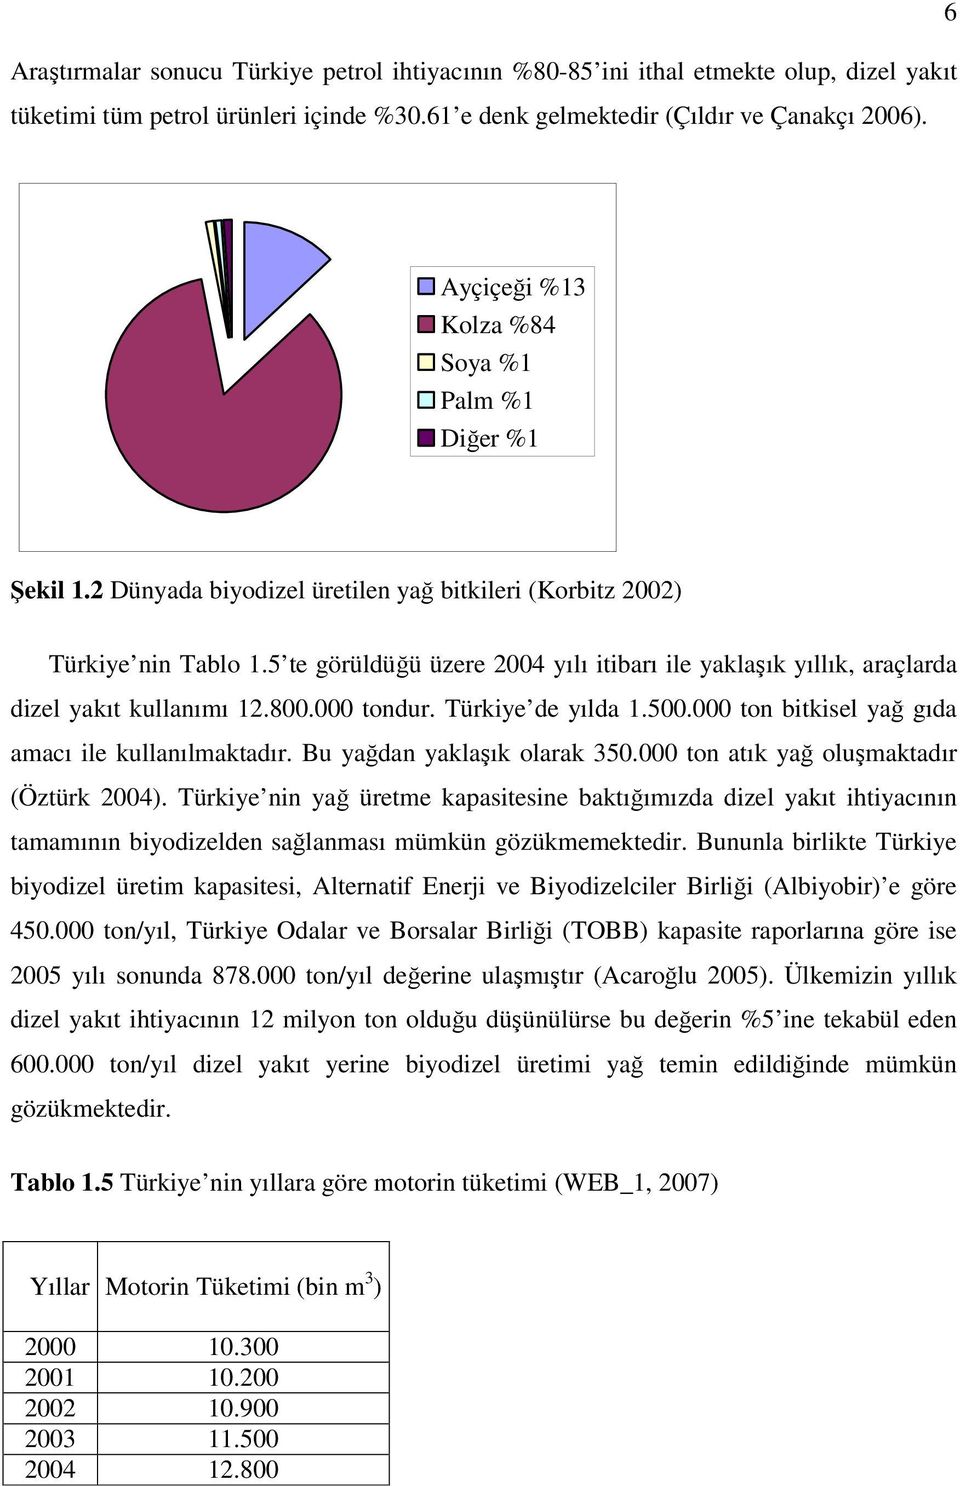 5 te görüldüğü üzere 2004 yılı itibarı ile yaklaşık yıllık, araçlarda dizel yakıt kullanımı 12.800.000 tondur. Türkiye de yılda 1.500.000 ton bitkisel yağ gıda amacı ile kullanılmaktadır.